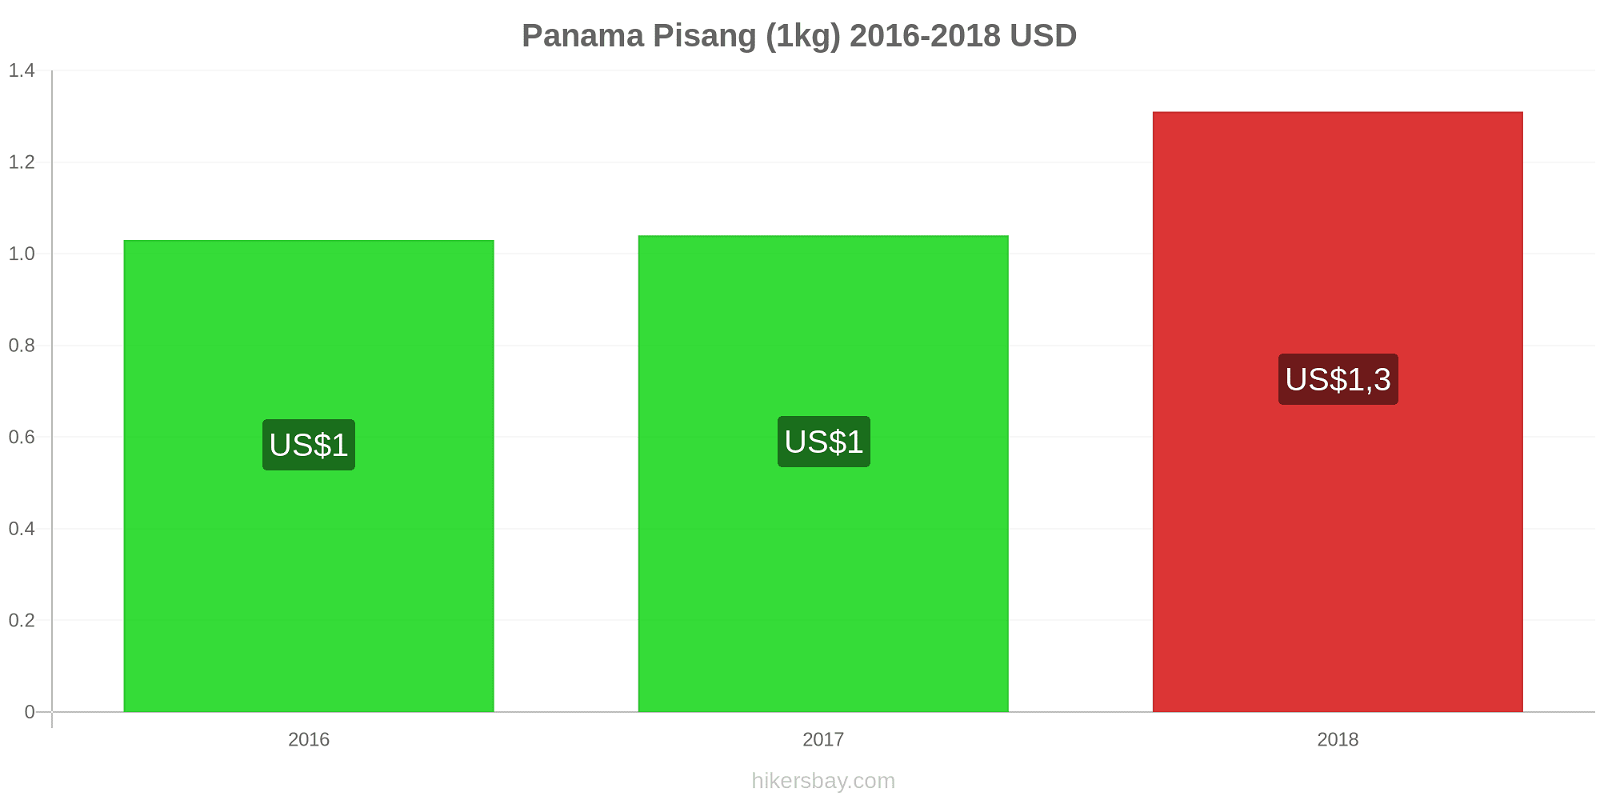 Panama perubahan harga Pisang (1kg) hikersbay.com